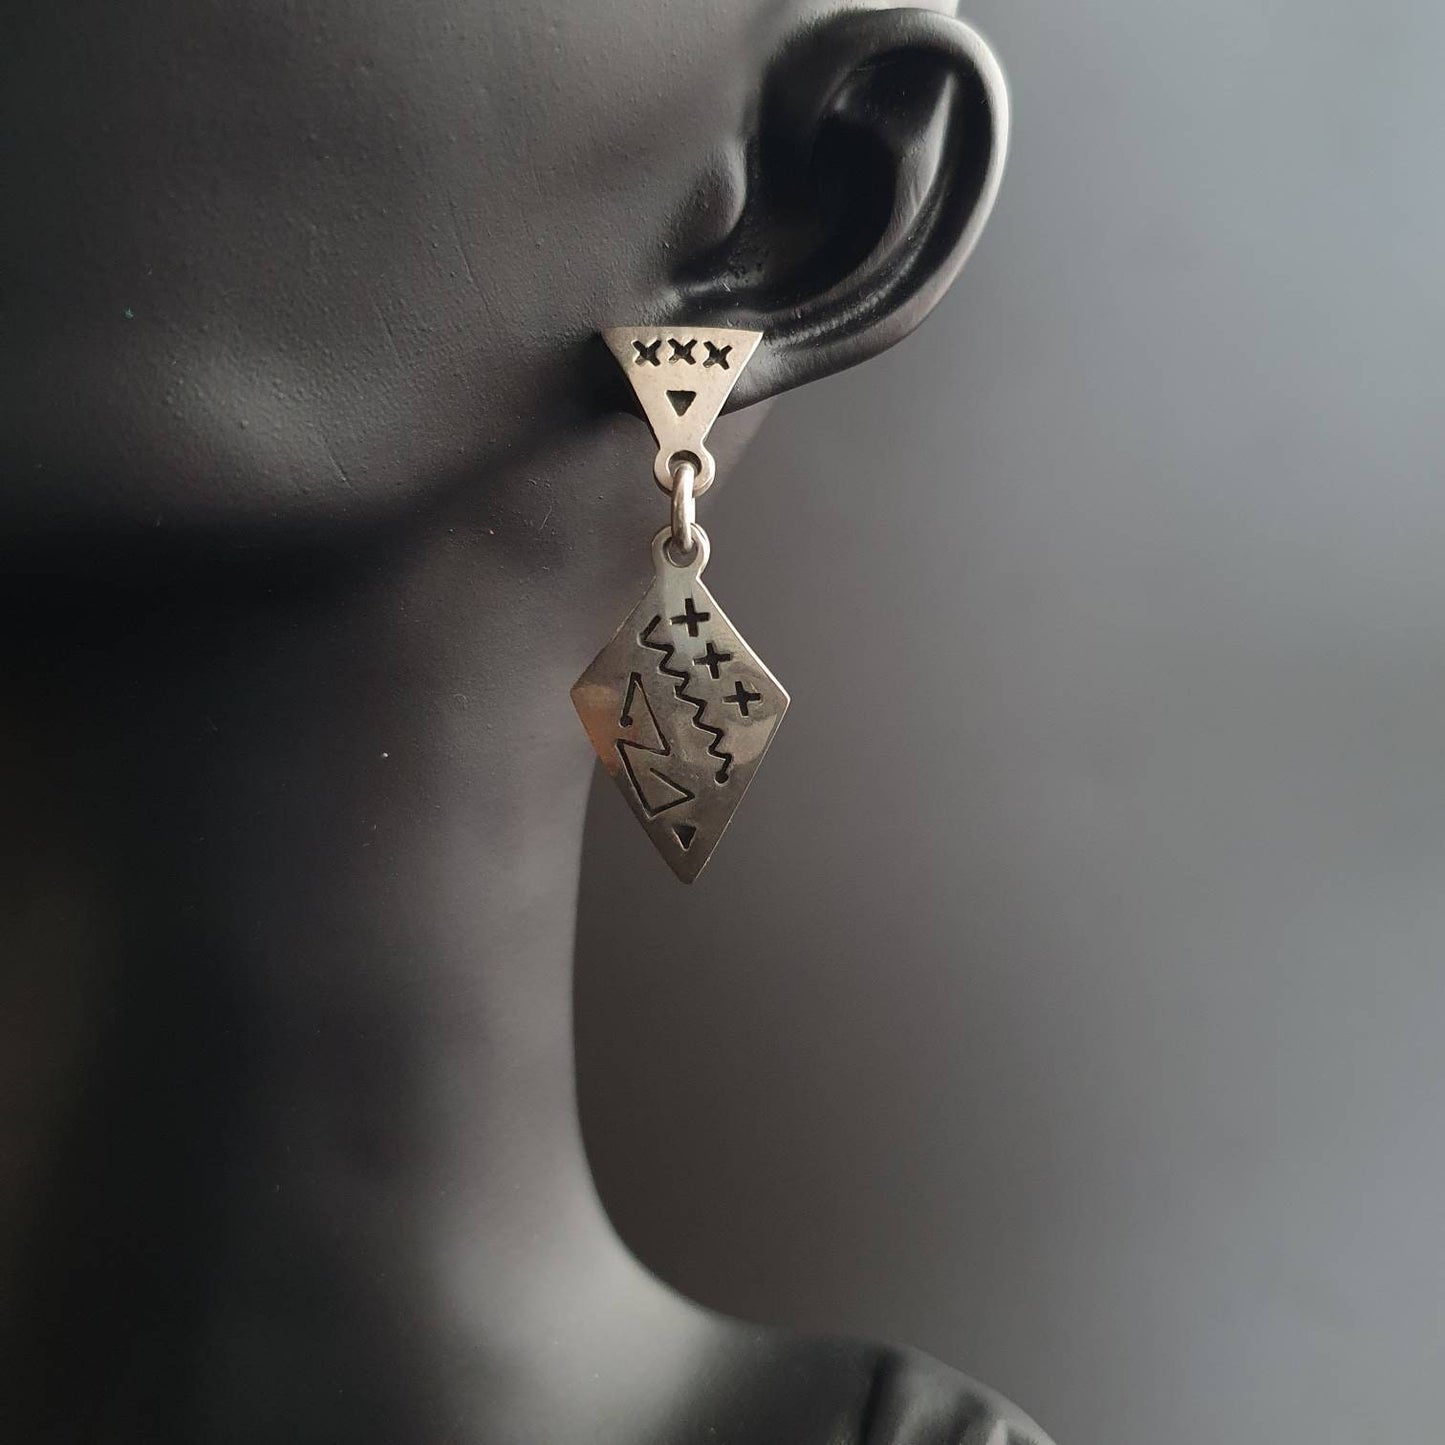 Earrings, sterling silver earrings, unique jewelry, handmade vintage jewelry, Aztec earrings, tribal jewelry, gifts, unisex,